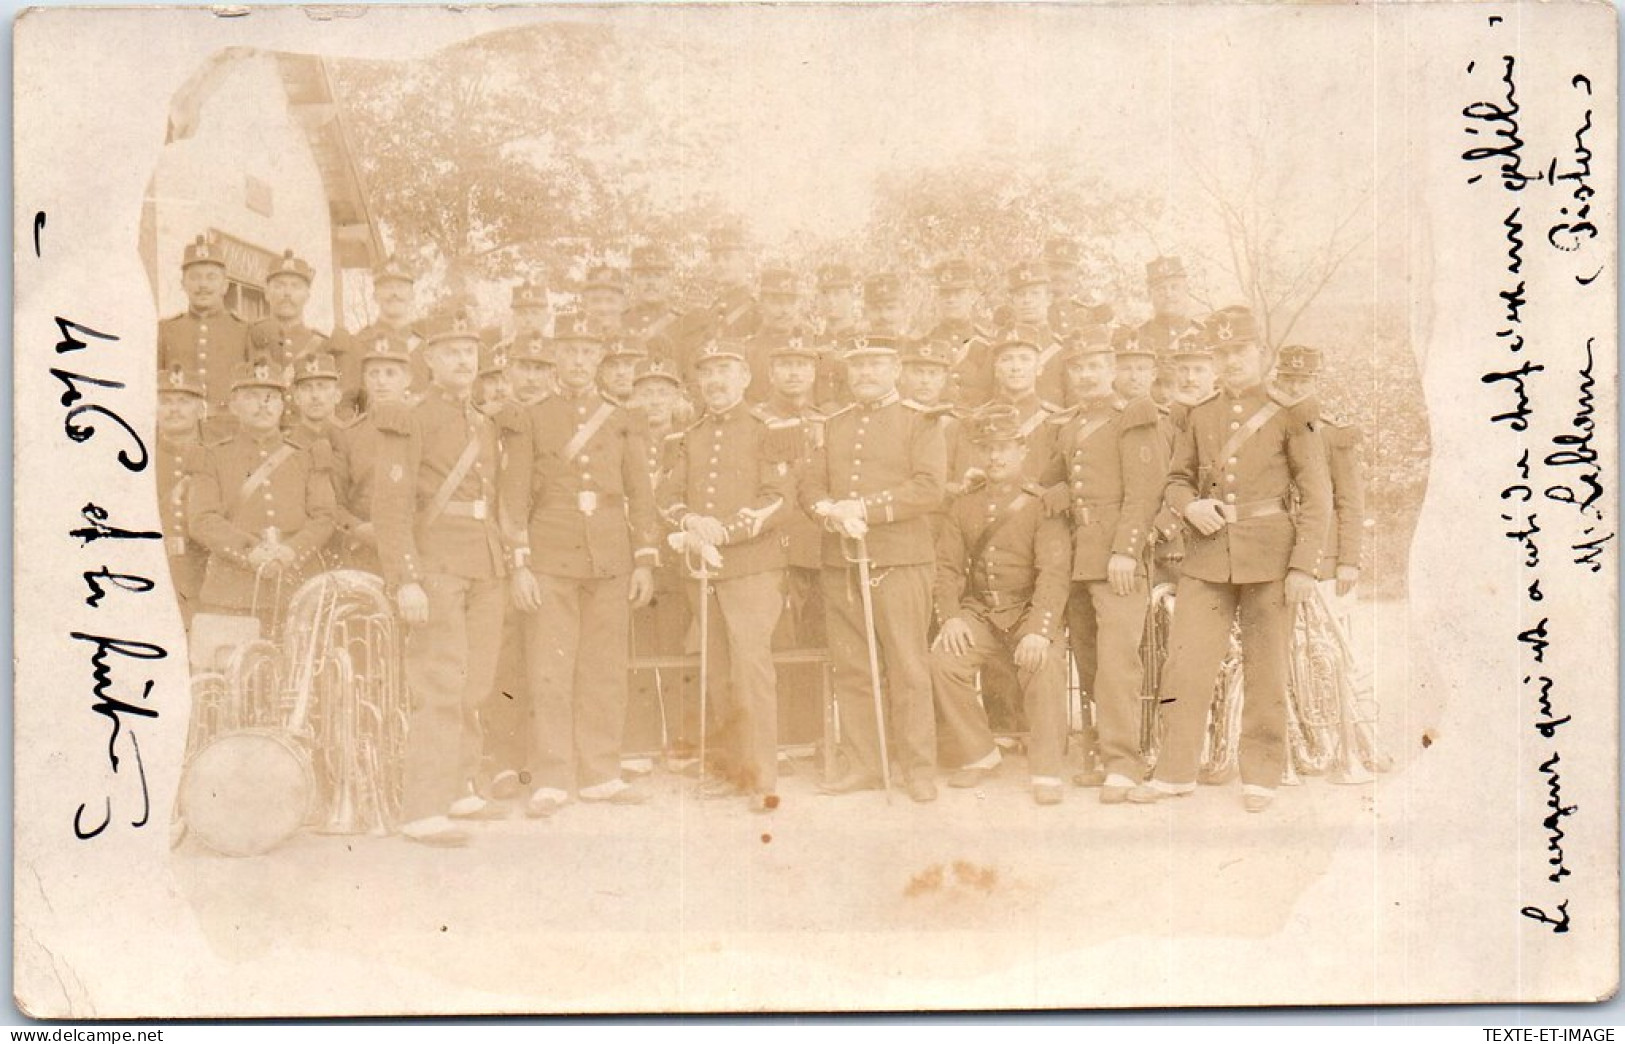 88 SAINT DIE - CARTE PHOTO - Militaires Le 30 Juin 1909 - Saint Die